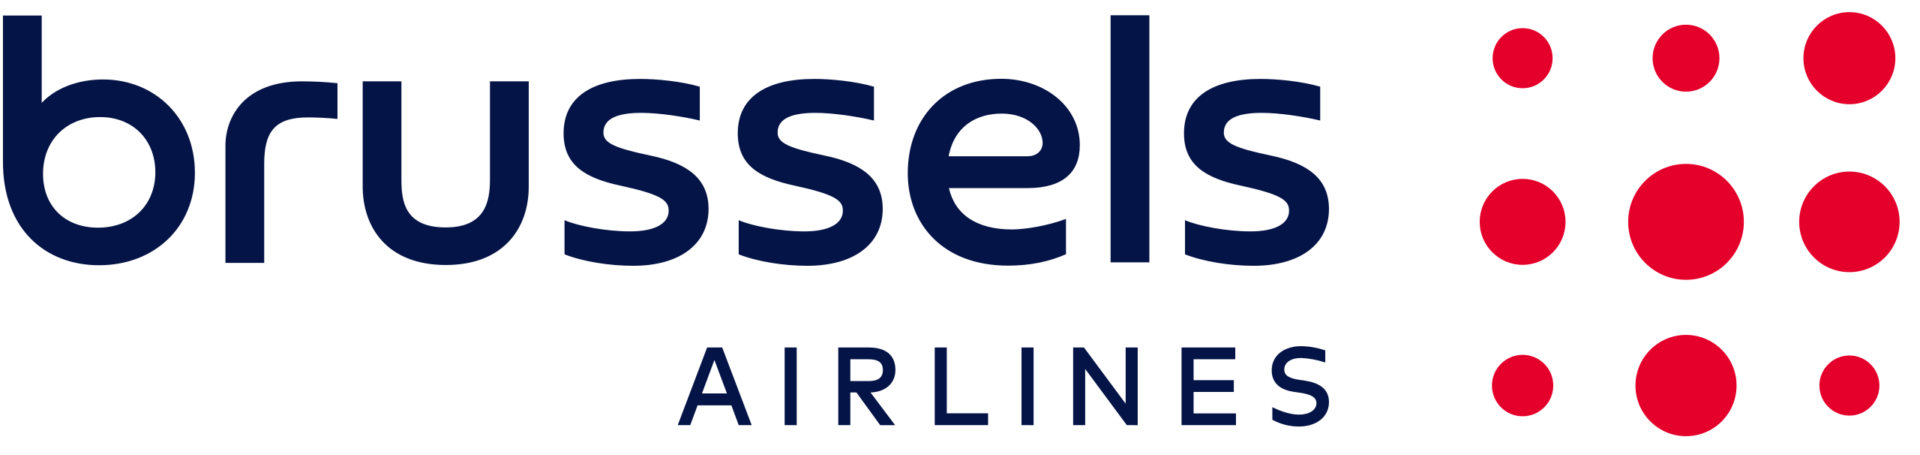 Brussels Airlines Logo 2021.svg